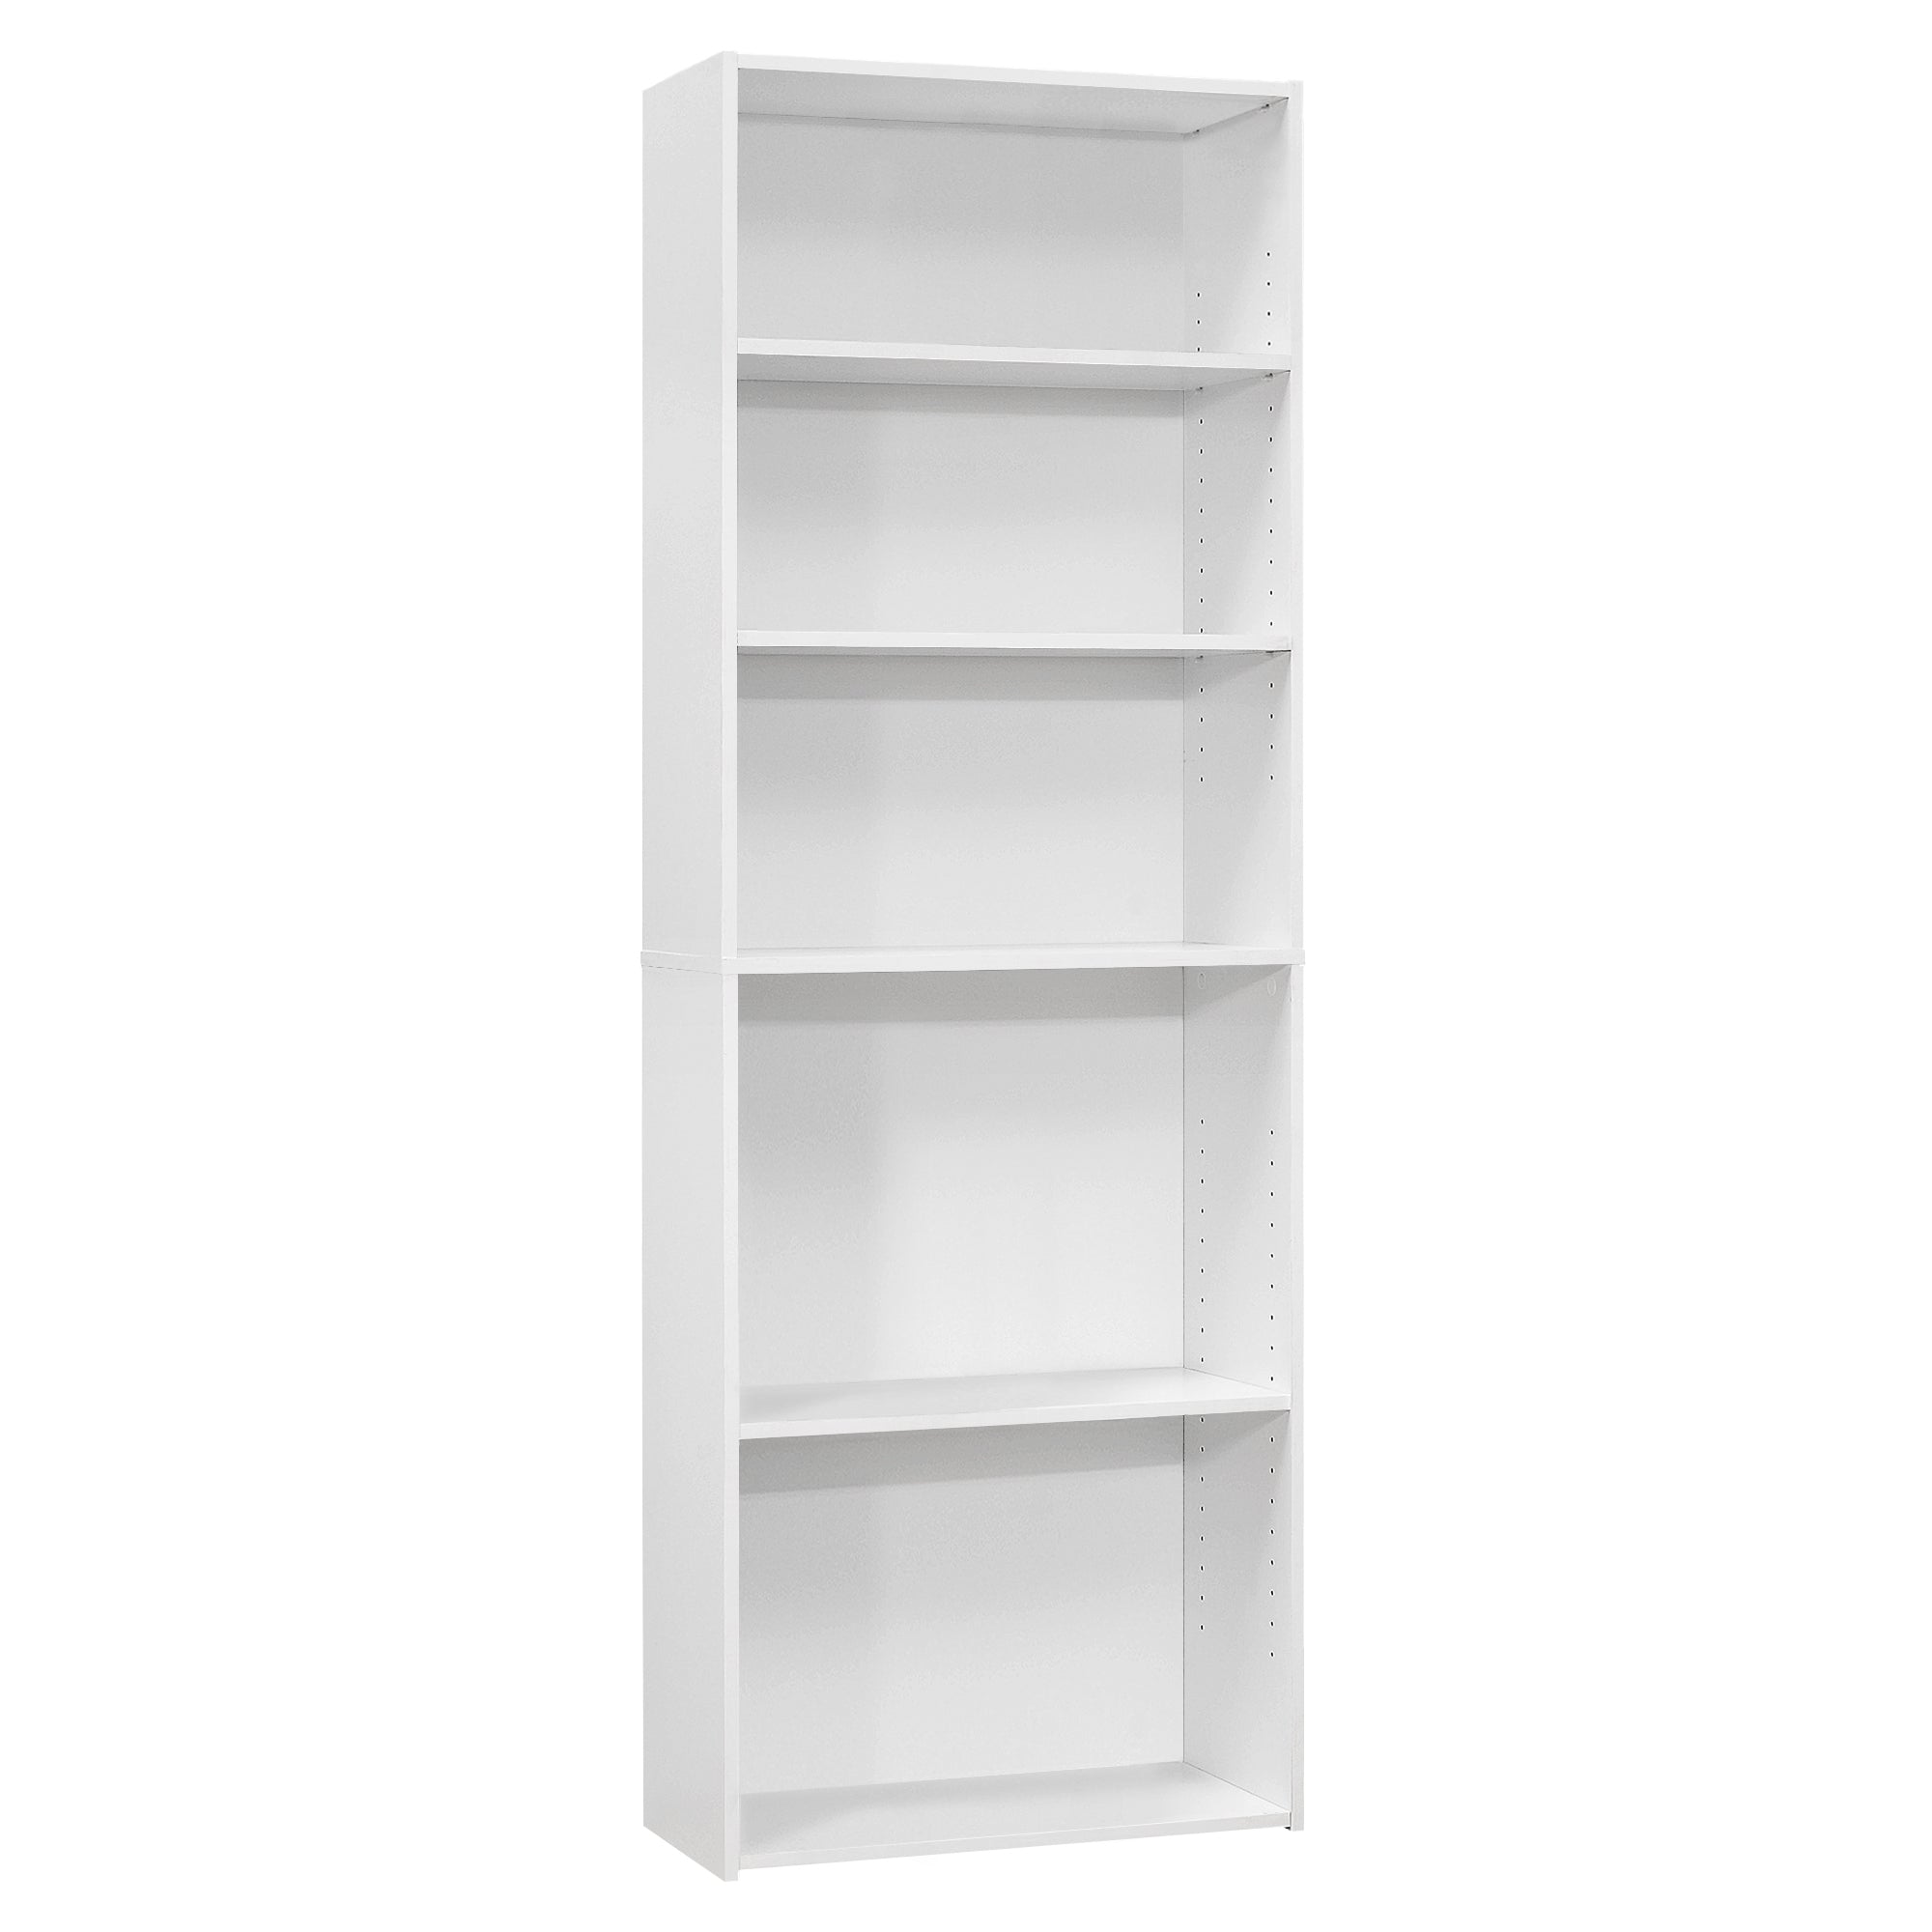 11.75" x 24.75" x 71.25" White, 5 Shelves - Bookcase